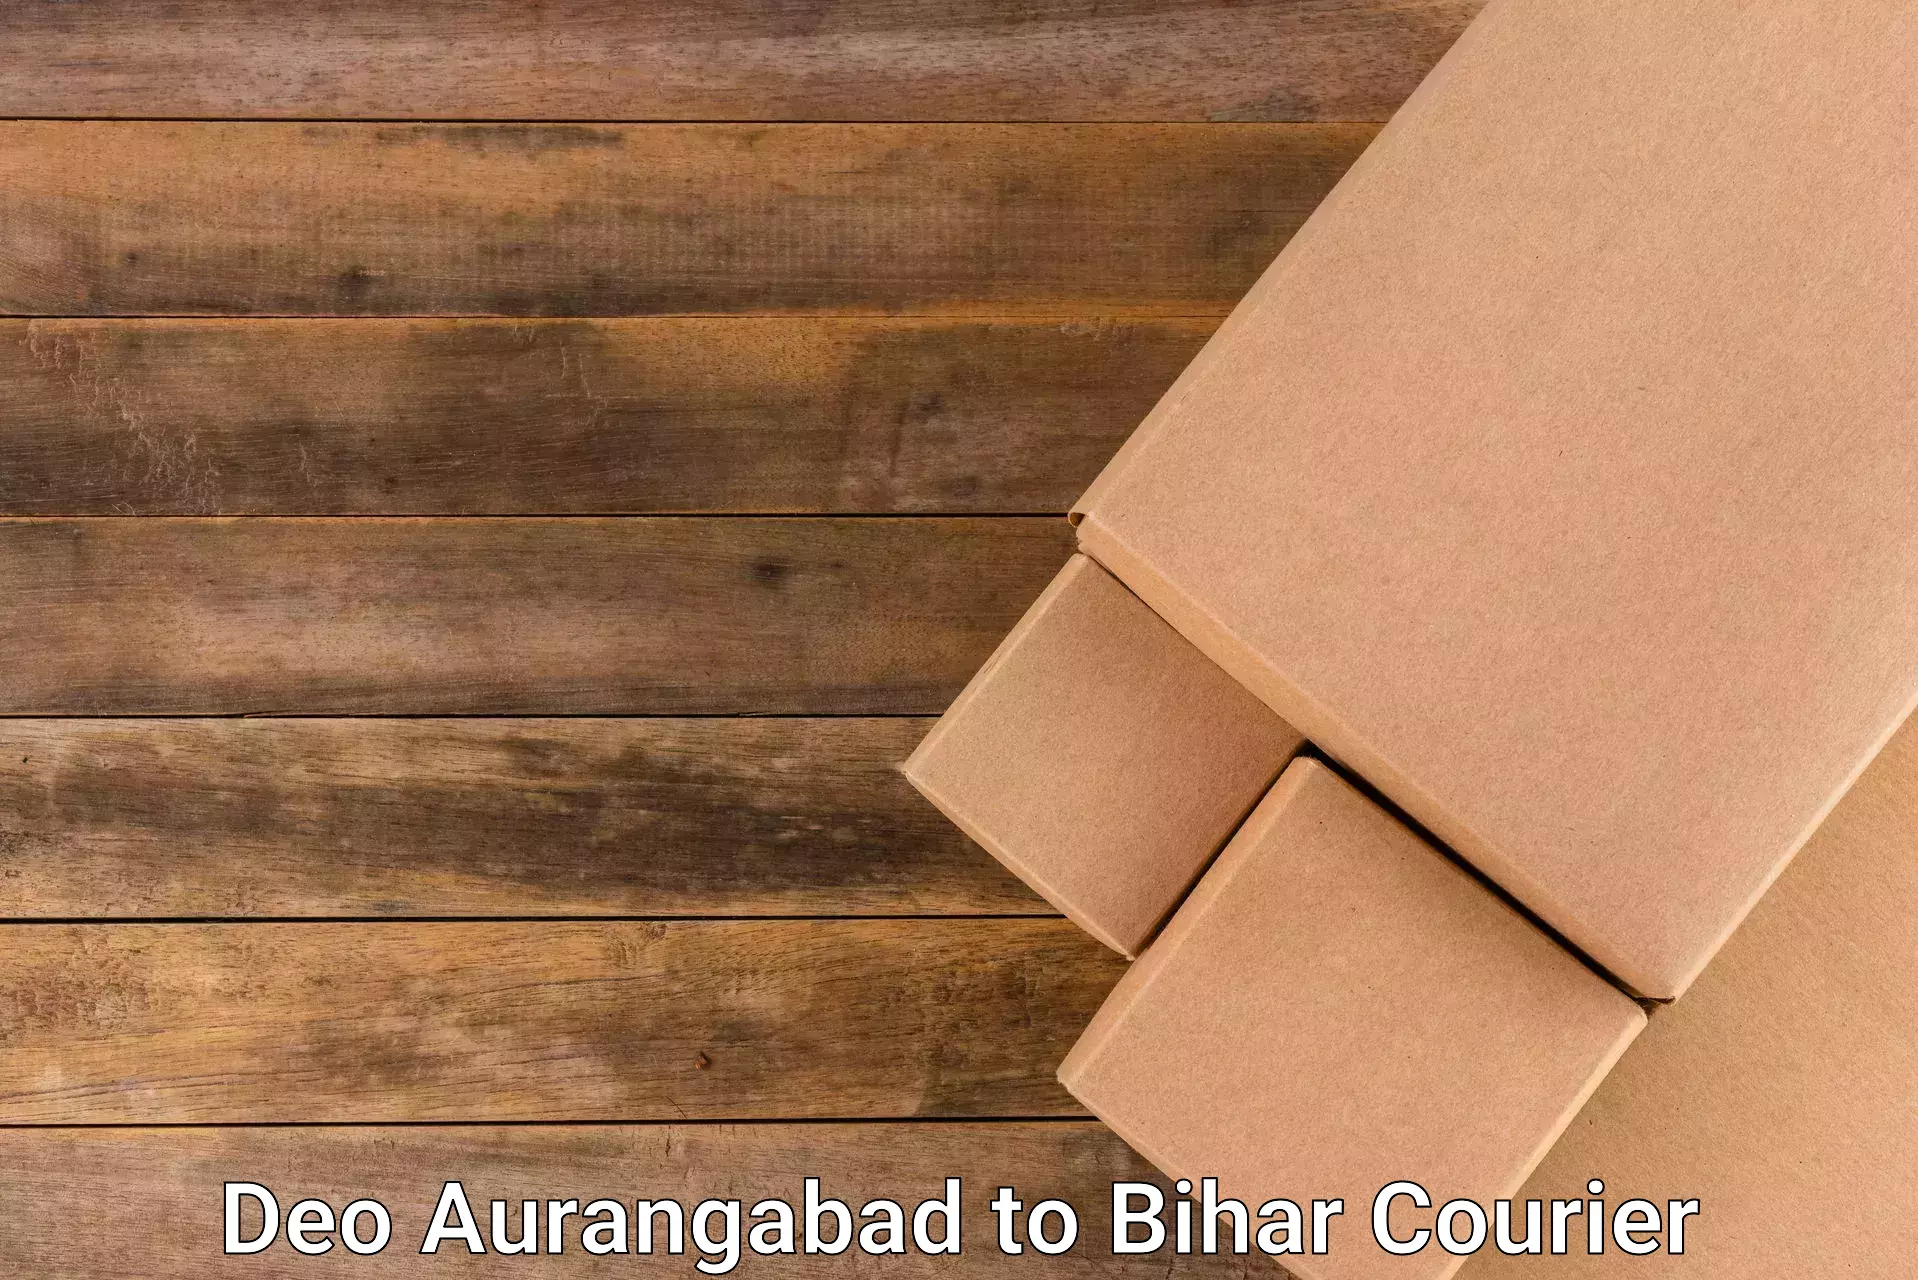 Professional courier services Deo Aurangabad to Arrah